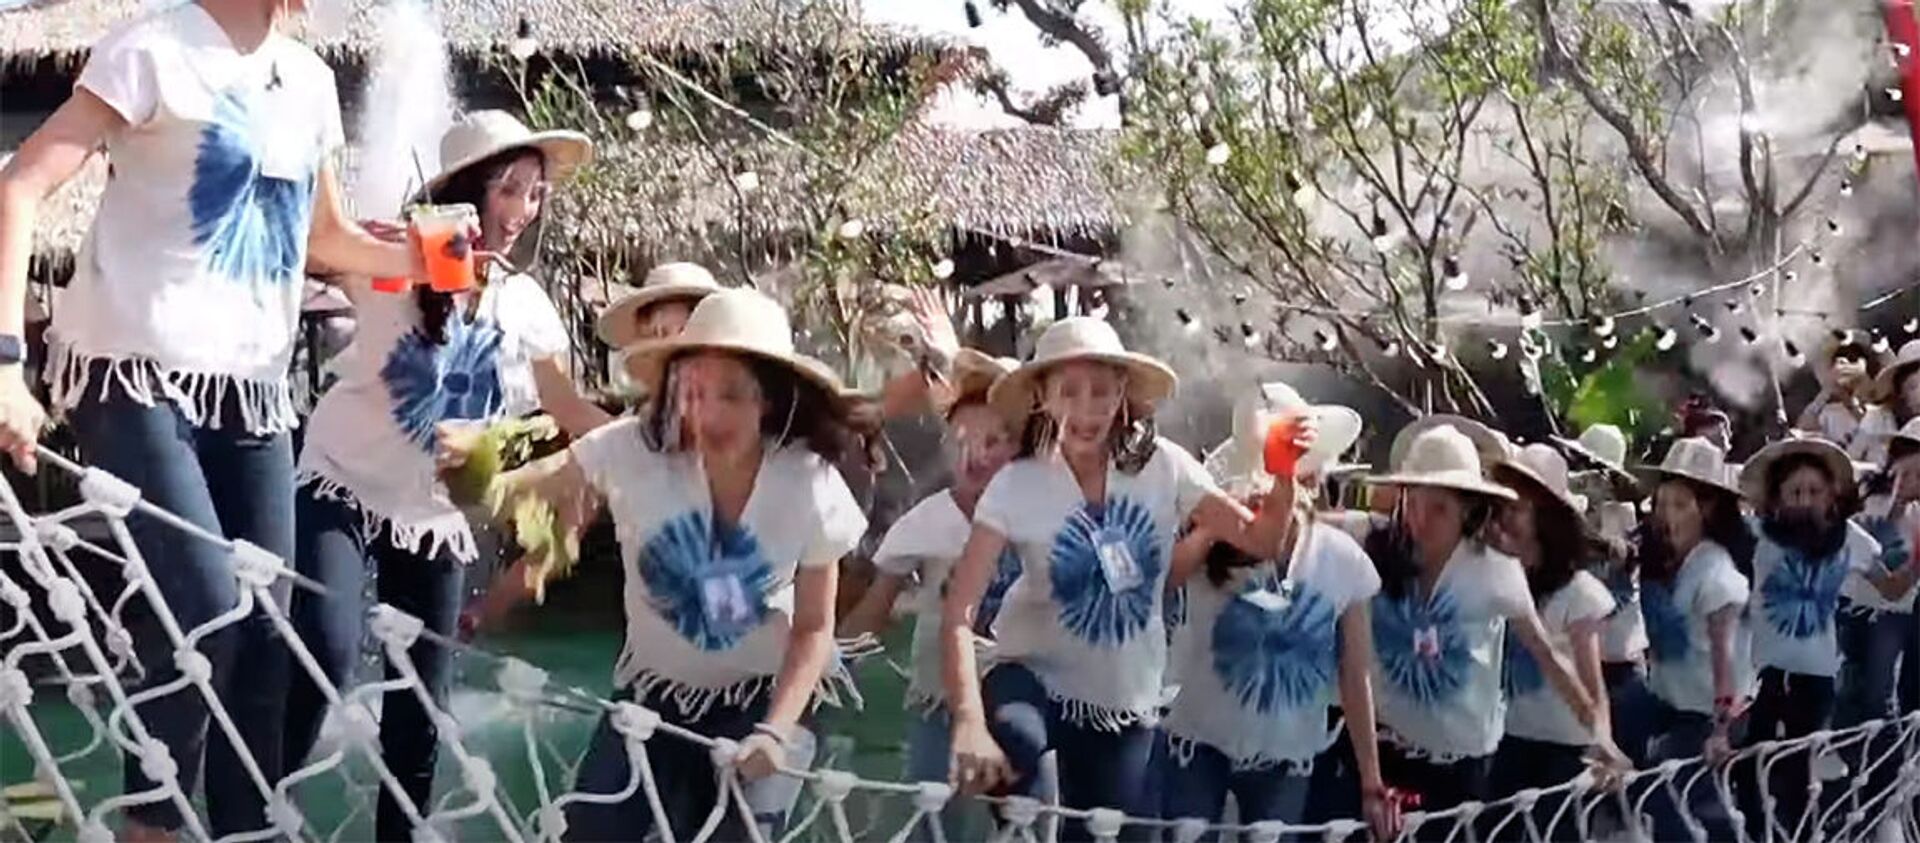 Участницы Мисс Таиланд свалились с моста в грязную воду. Видео - Sputnik Кыргызстан, 1920, 08.12.2020